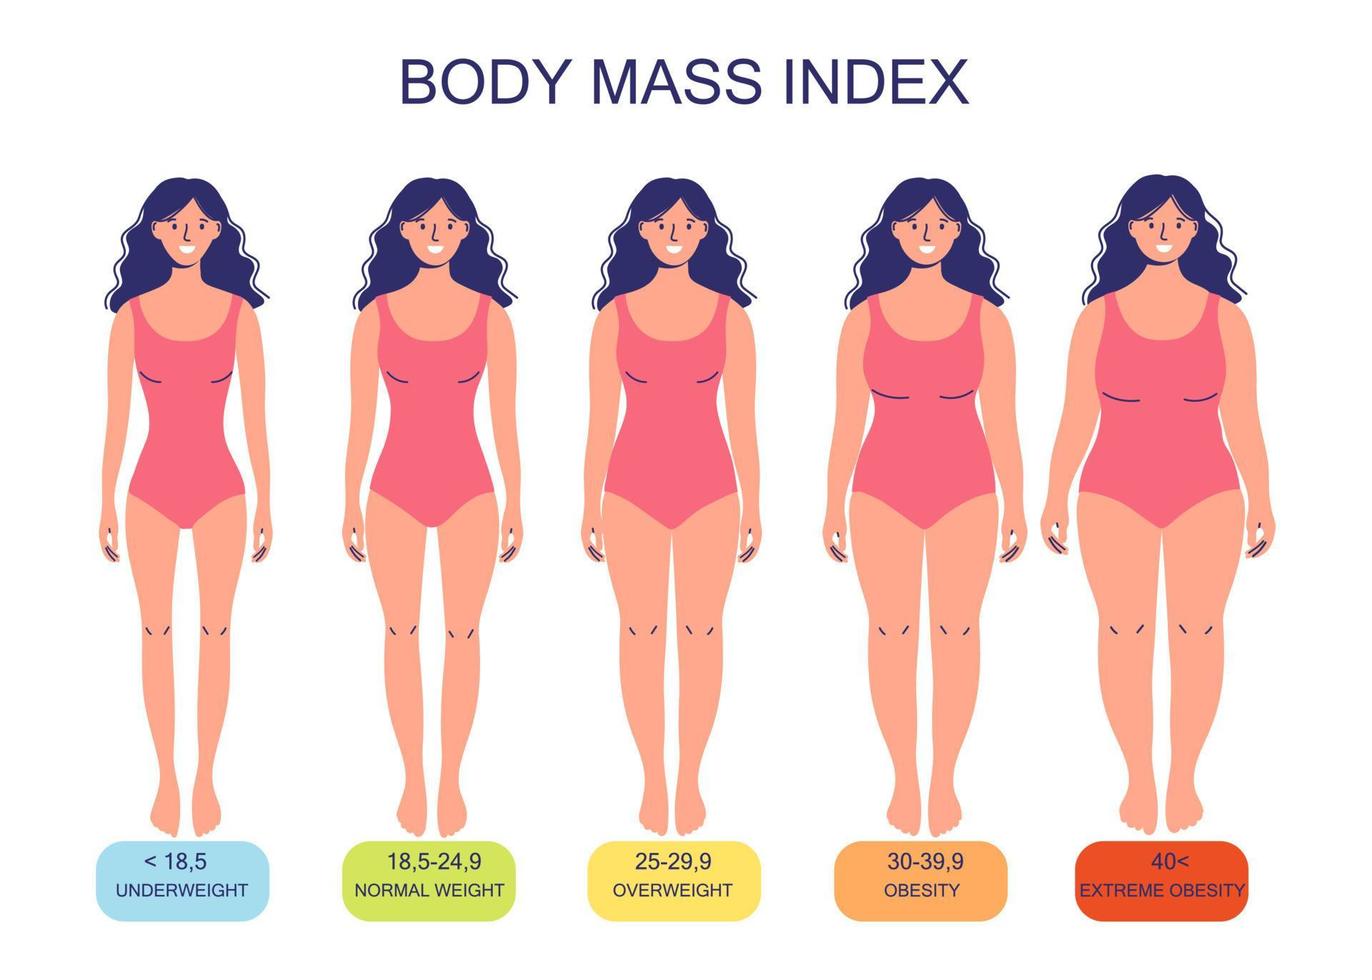 índice de masa corporal desde bajo peso hasta extremadamente obeso. vector